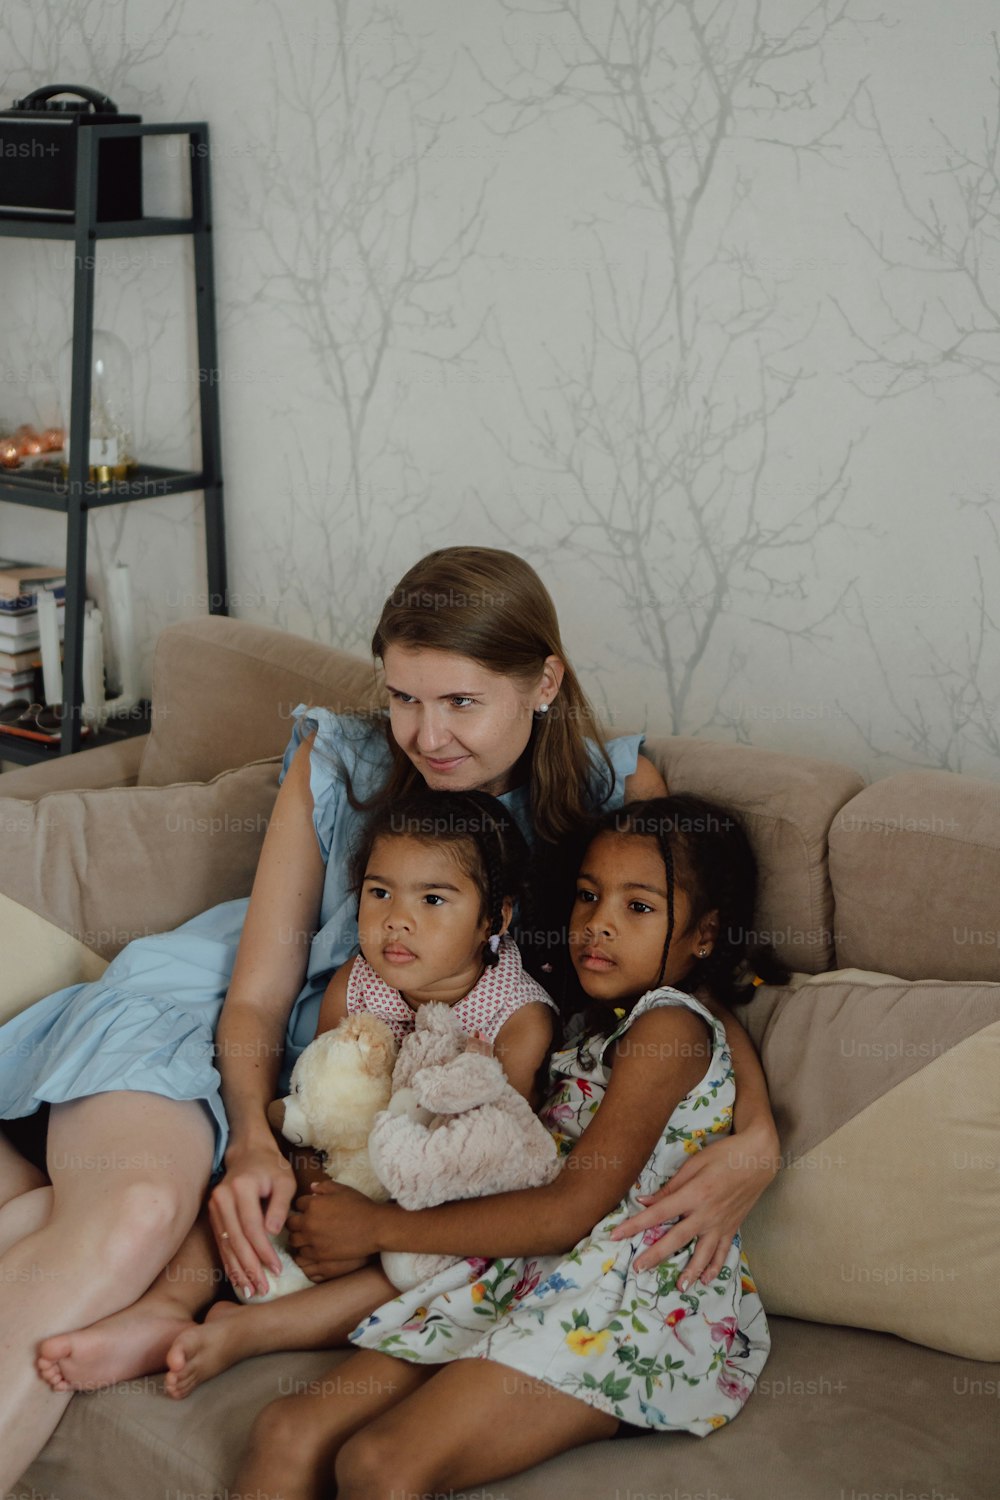 Eine Frau, die mit zwei Kindern auf einer Couch sitzt